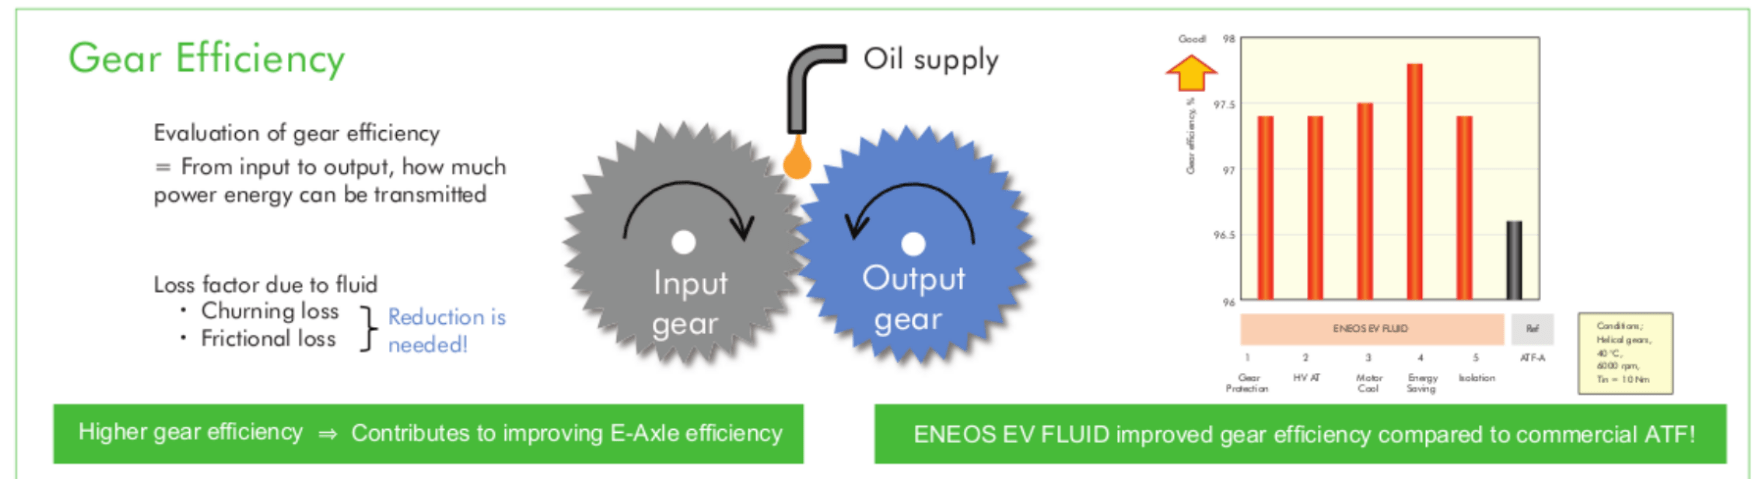 Gear Efficiency with EV Fluid - Eneos India